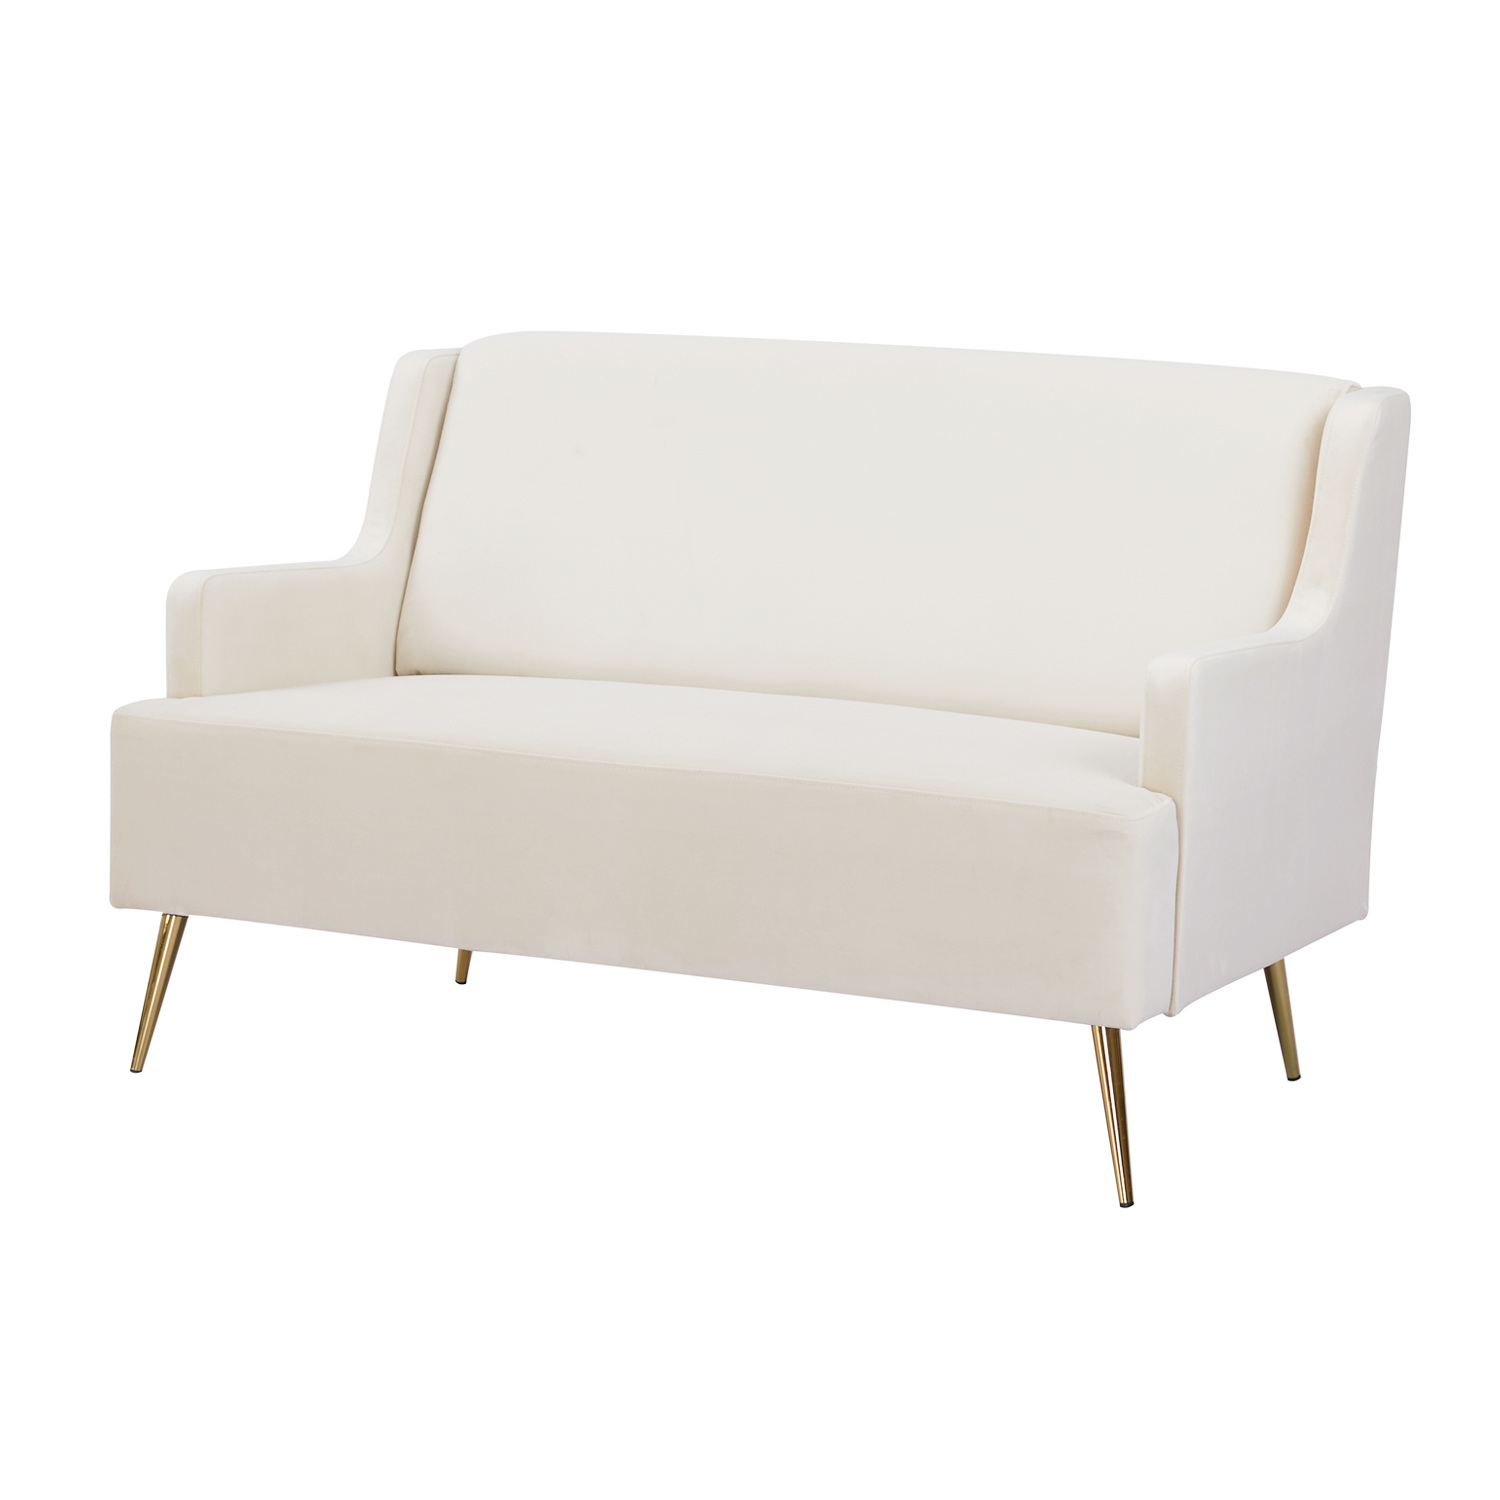 Rosterdam Sofa Bench (Beige) - Furniture Source Philippines